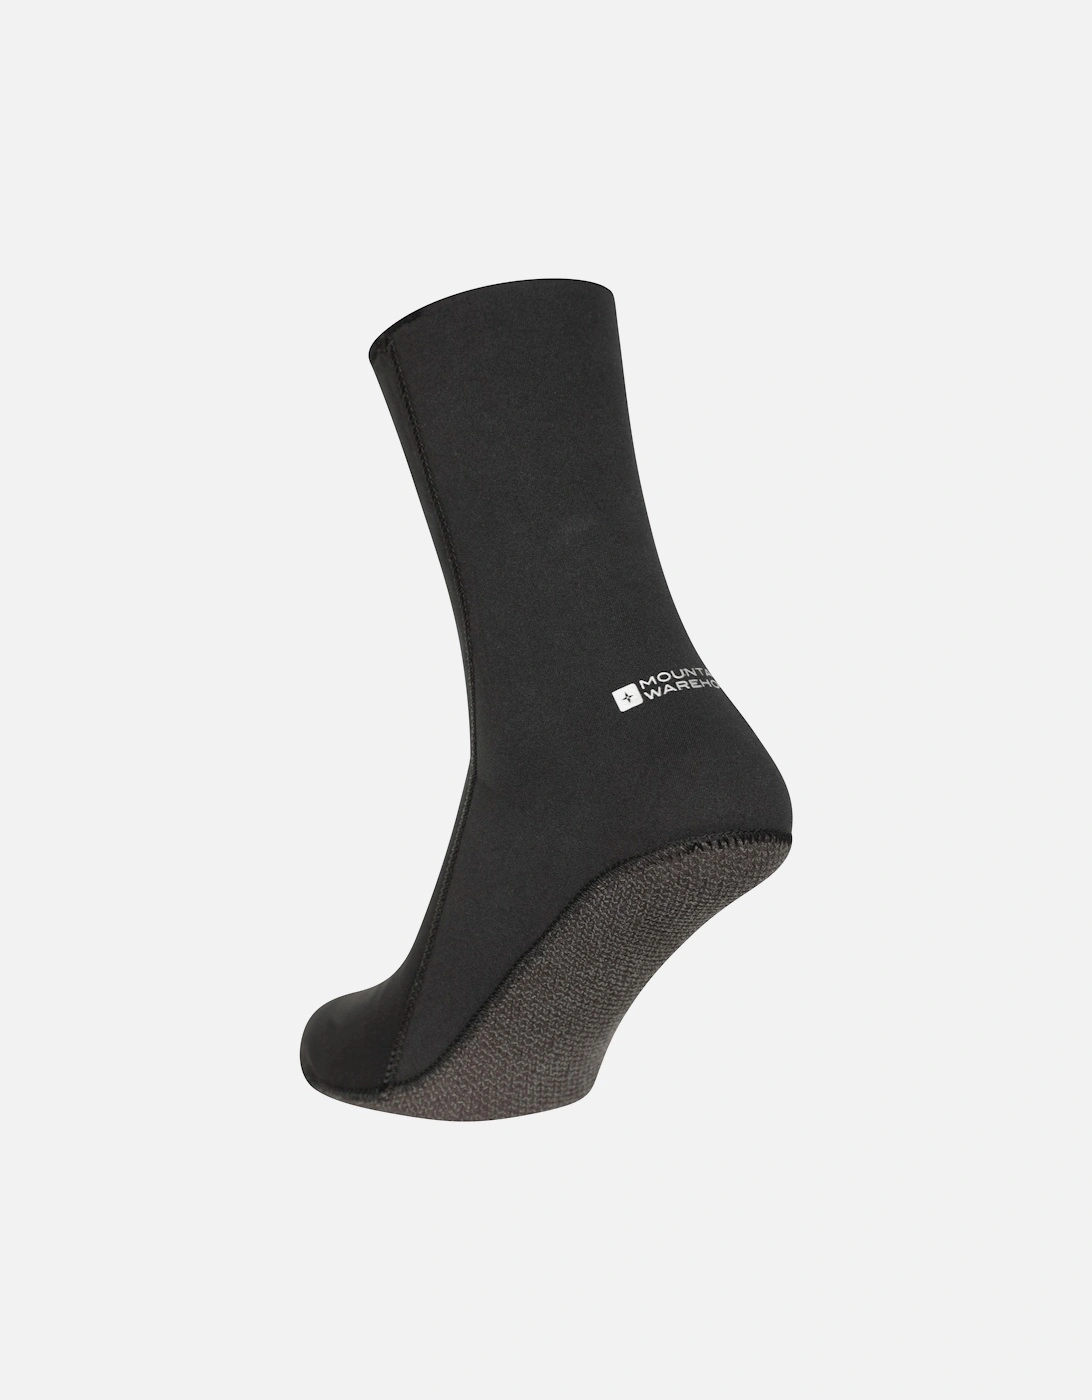 Unisex Adult 3mm Thickness Neoprene Pool Socks